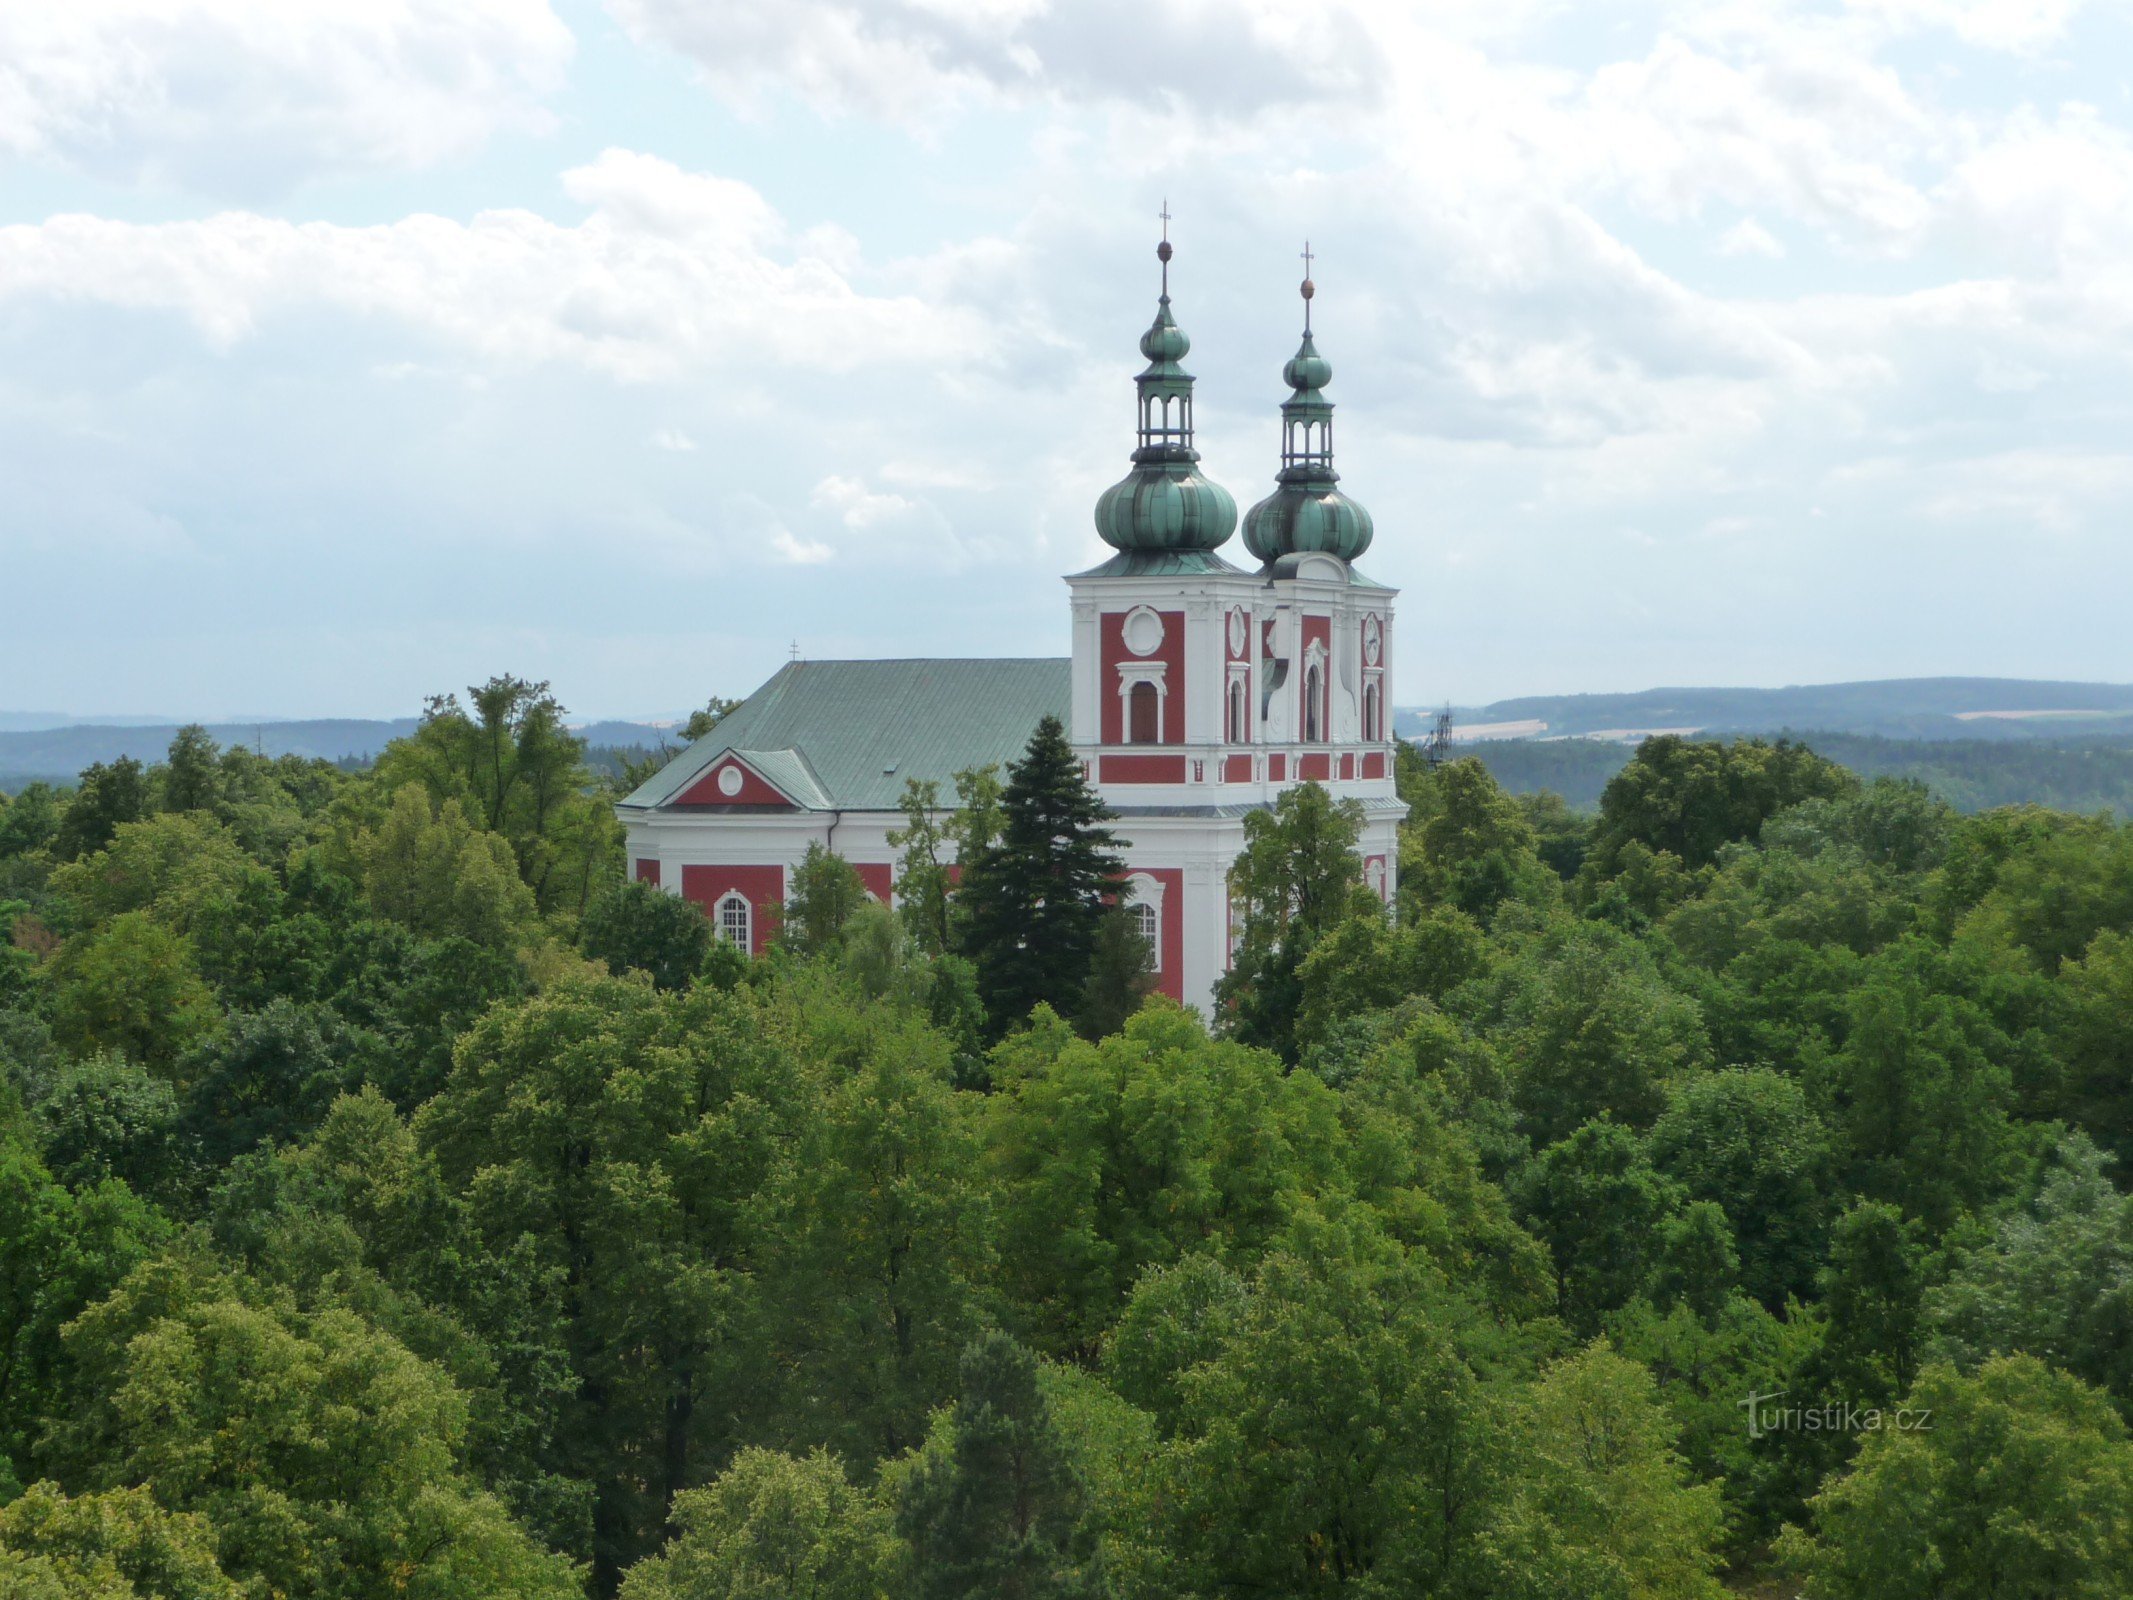 Cvilín - nhà thờ hành hương PMSedmibolestné, nhà nguyện đế chế ở vùng lân cận - trung tâm tâm linh của Silesia